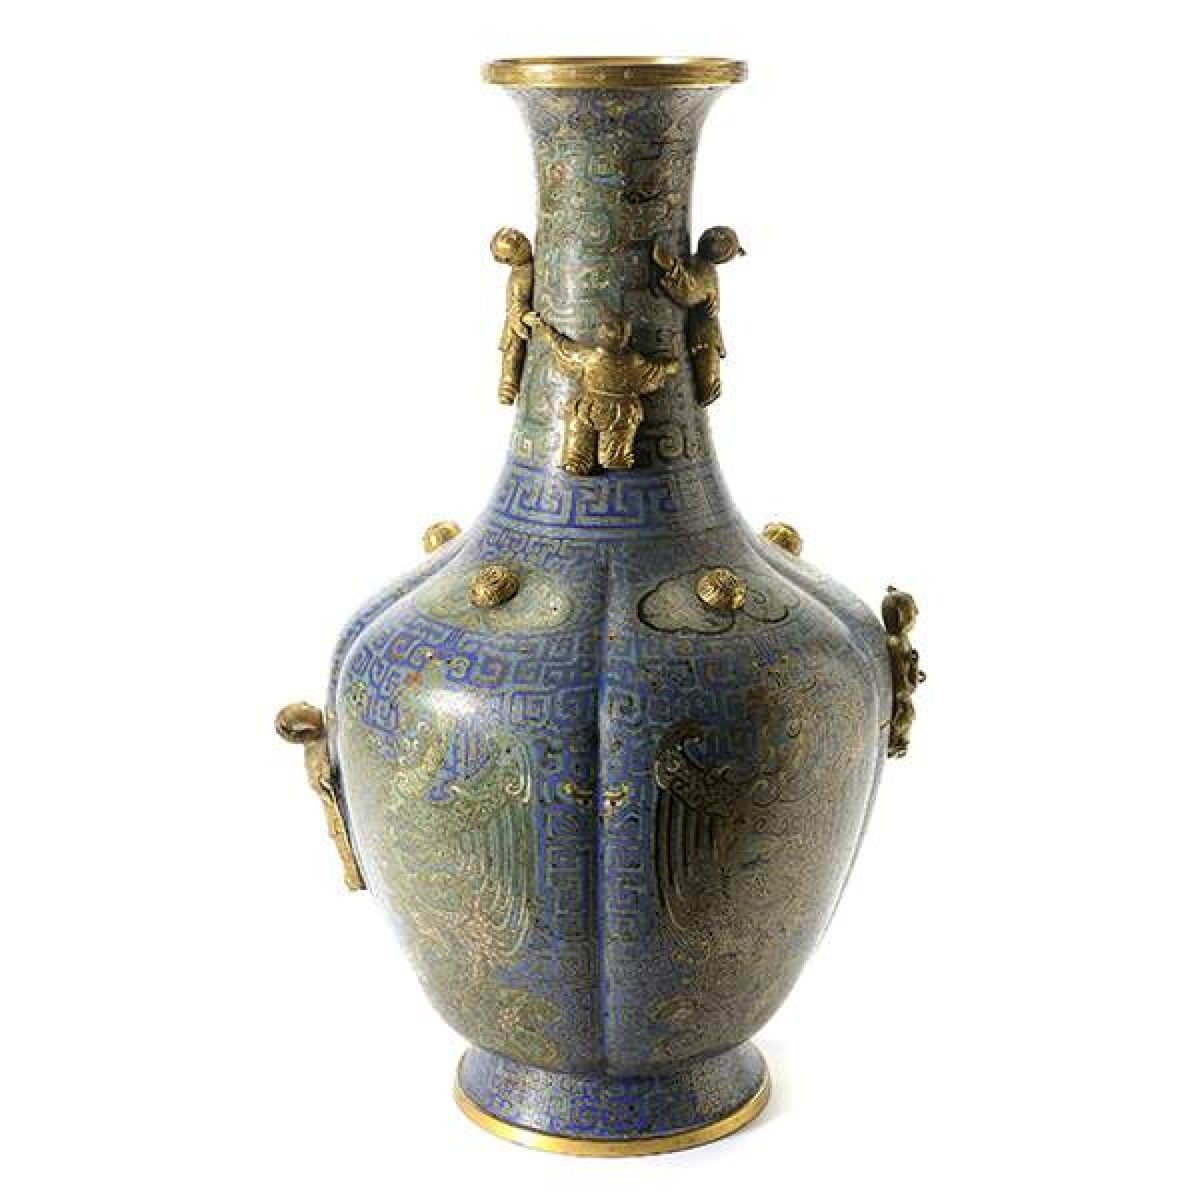 Fetching $100,300 was this large cloisonné enamel vase.